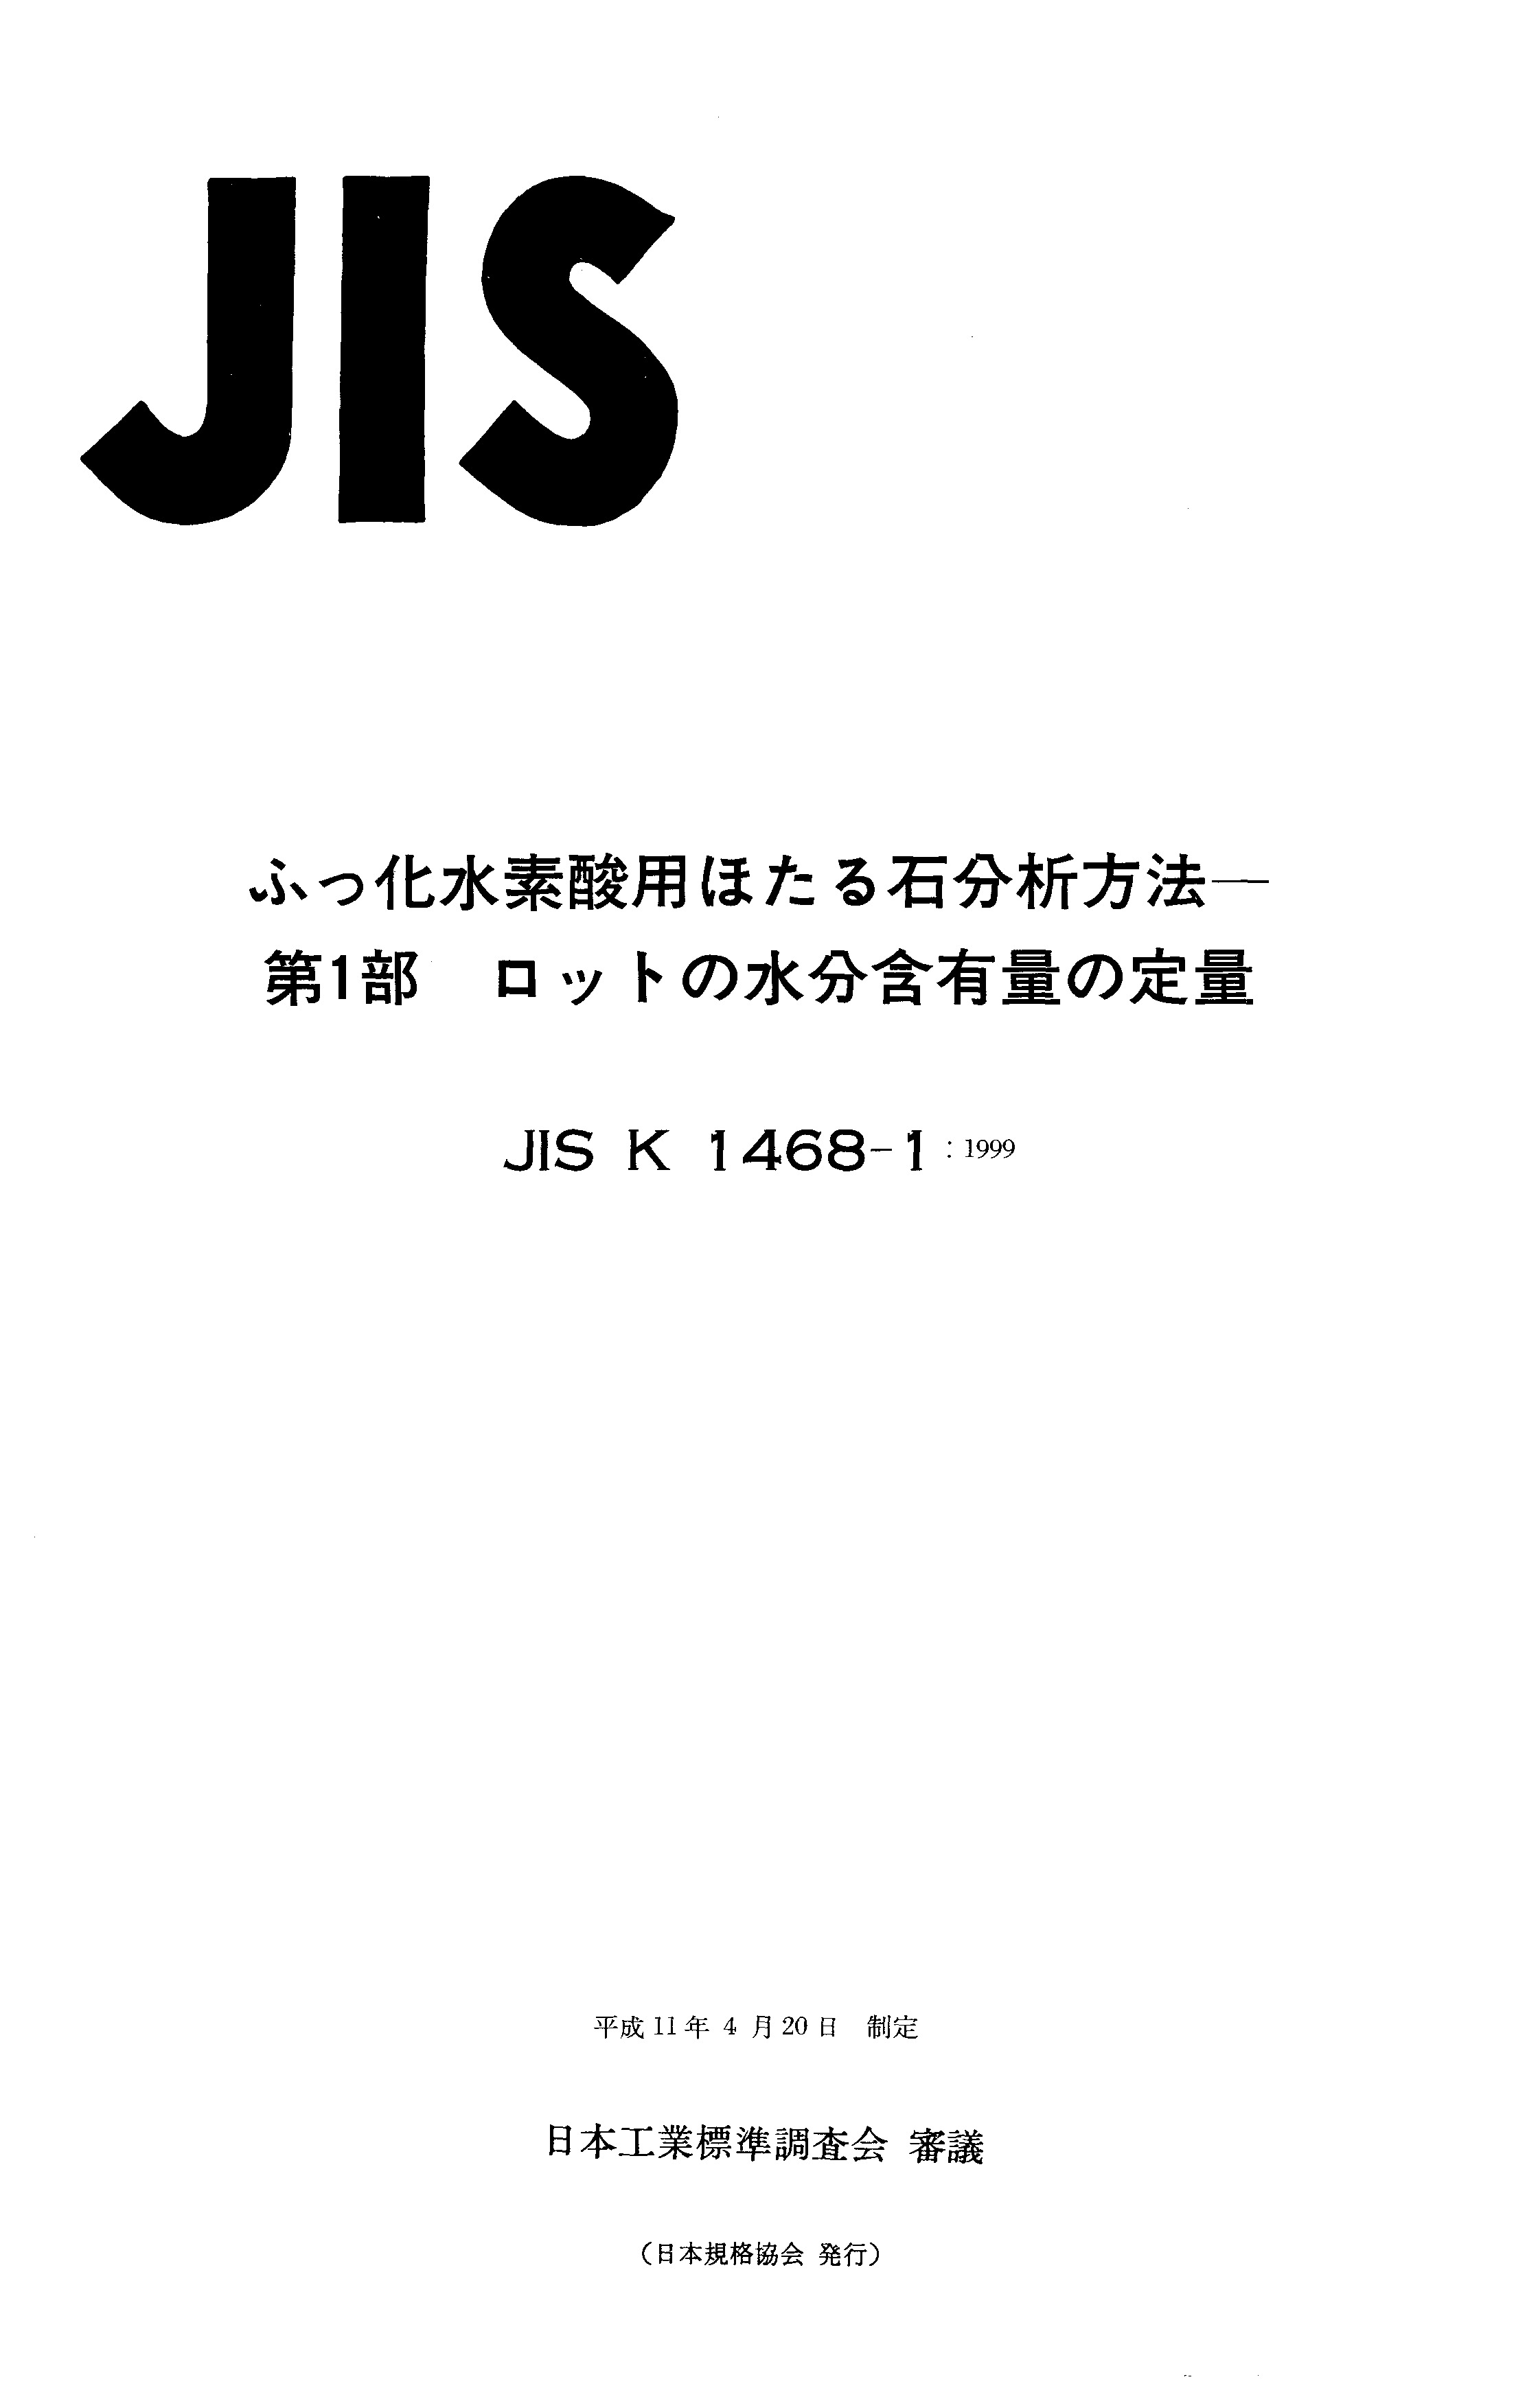 JIS K 1468-1:1999